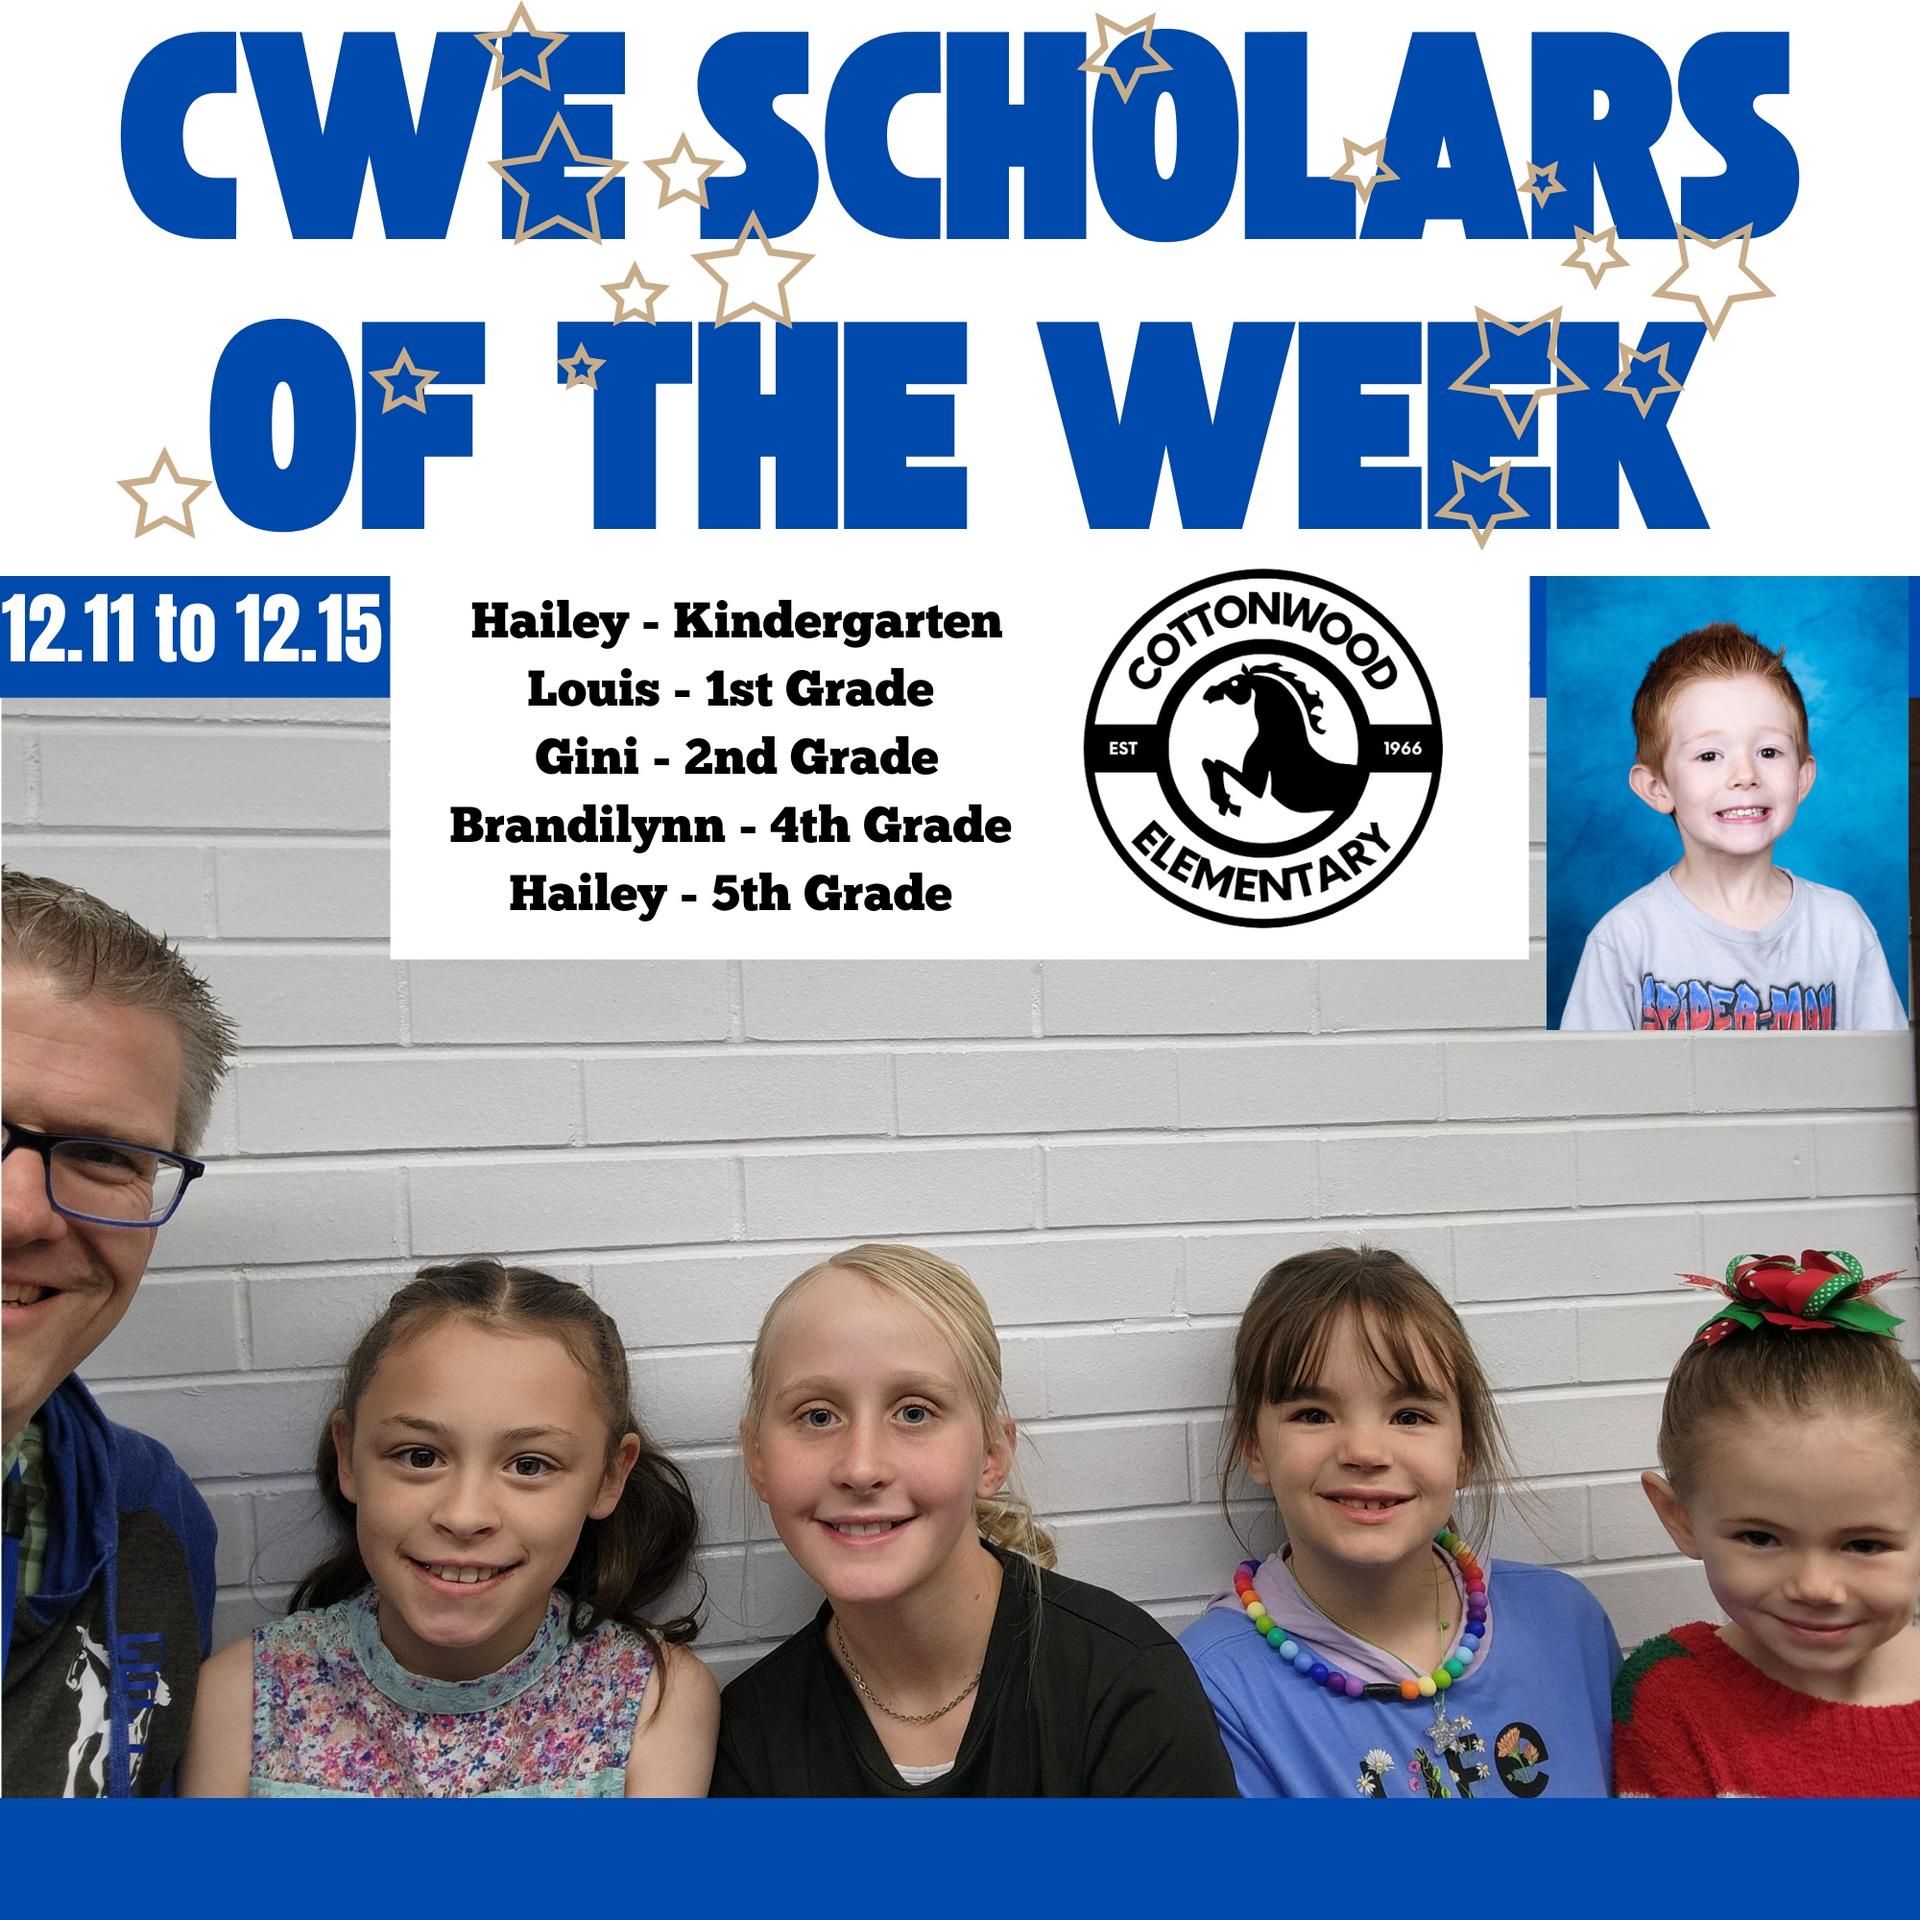 CWE-Scholars-of-the-Week-12.11-to-12.15.jpg